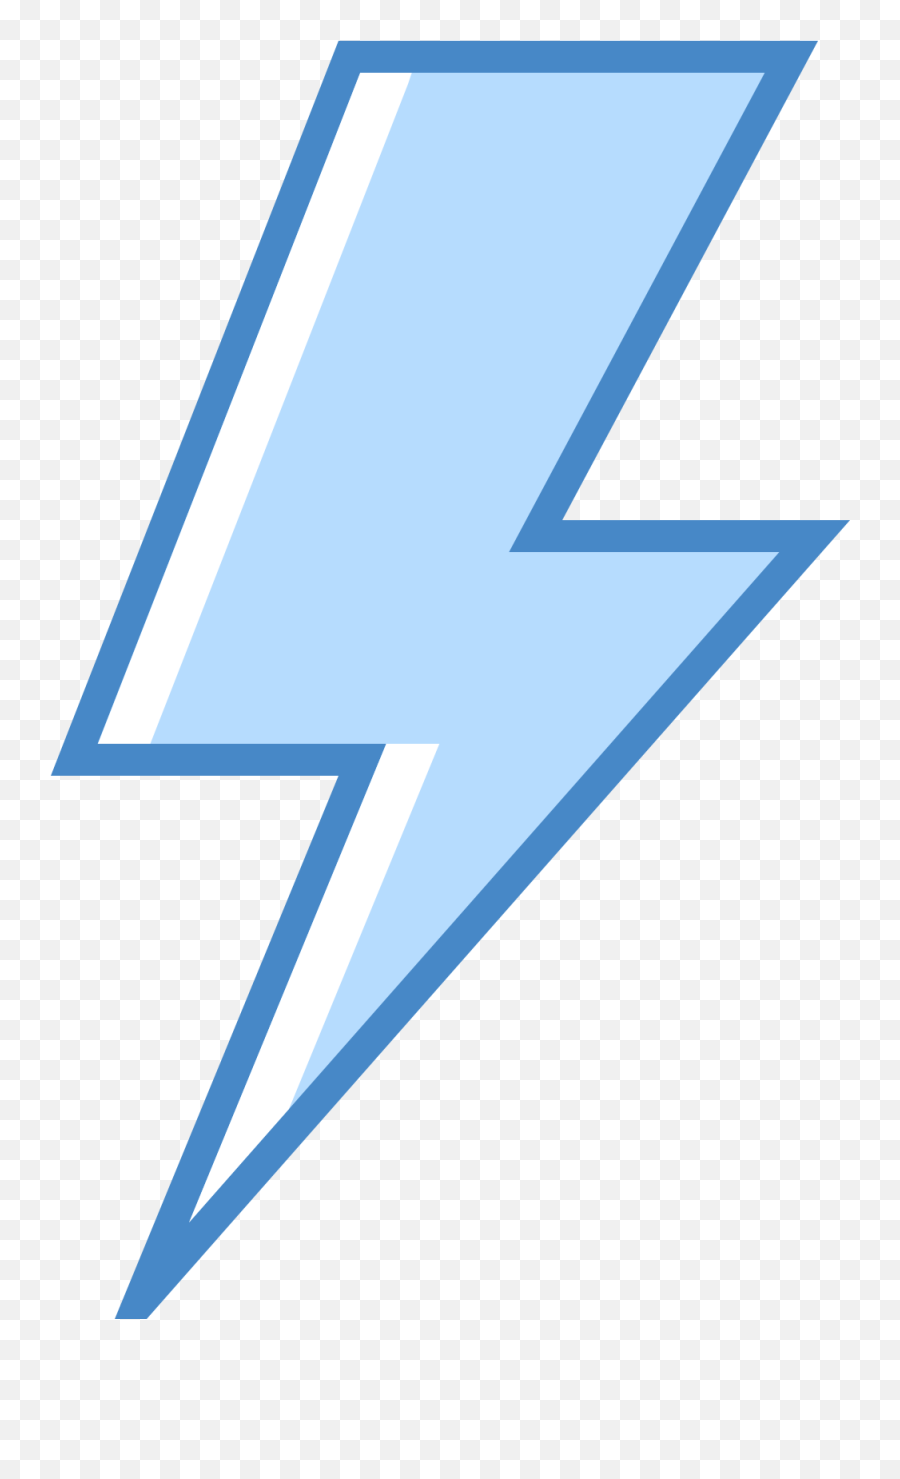 White Lightning Bolt Png - Triangle Clipart Full Size Blue Lightning Bolt Png,Blue Triangle Png